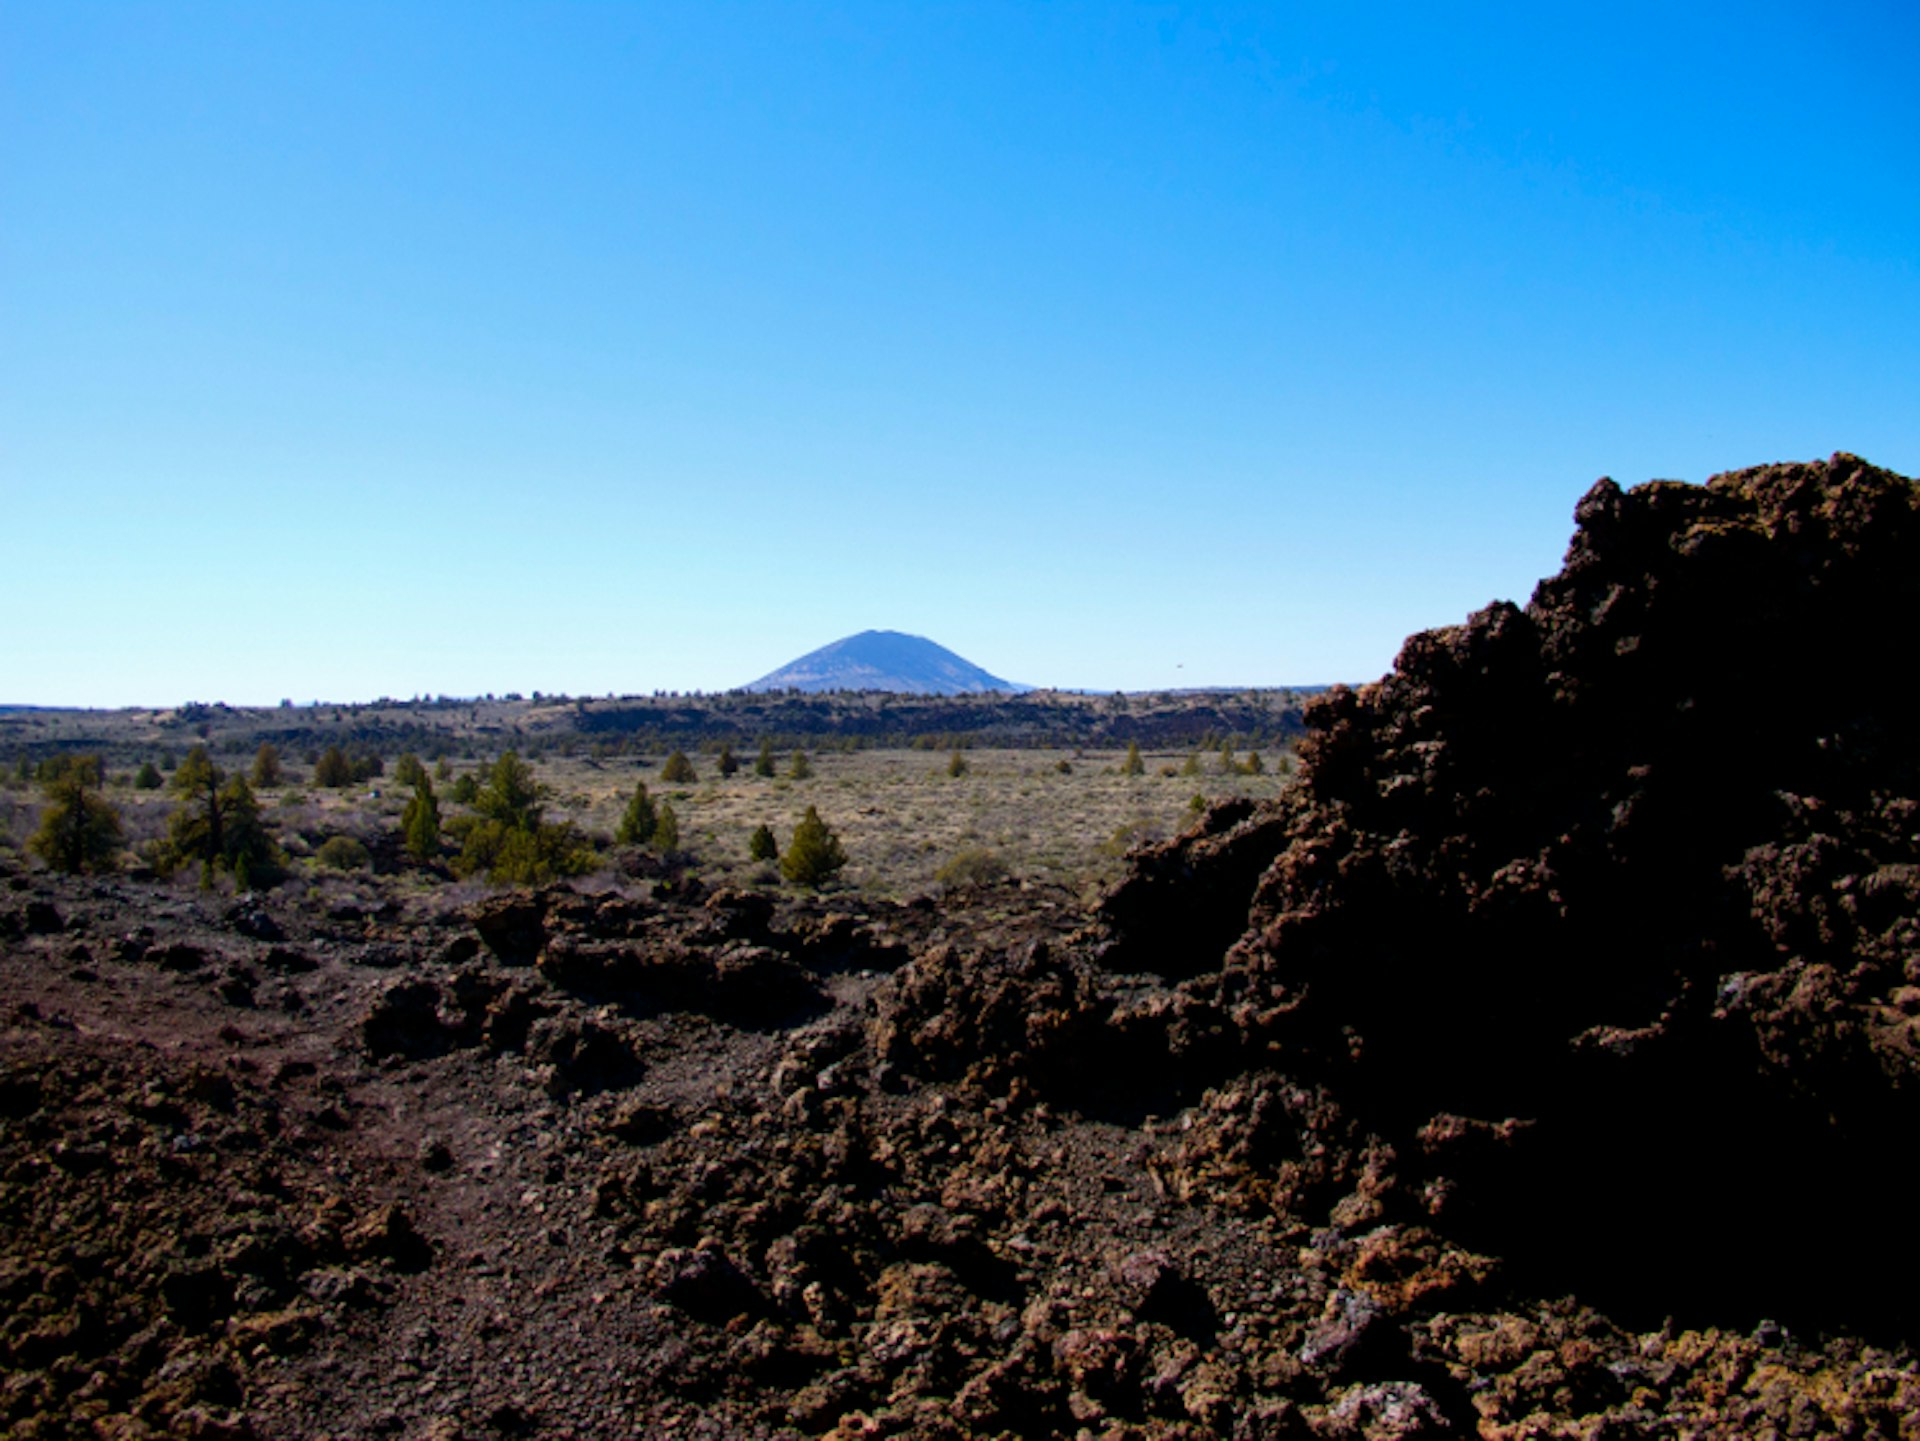 Lava beds landscape